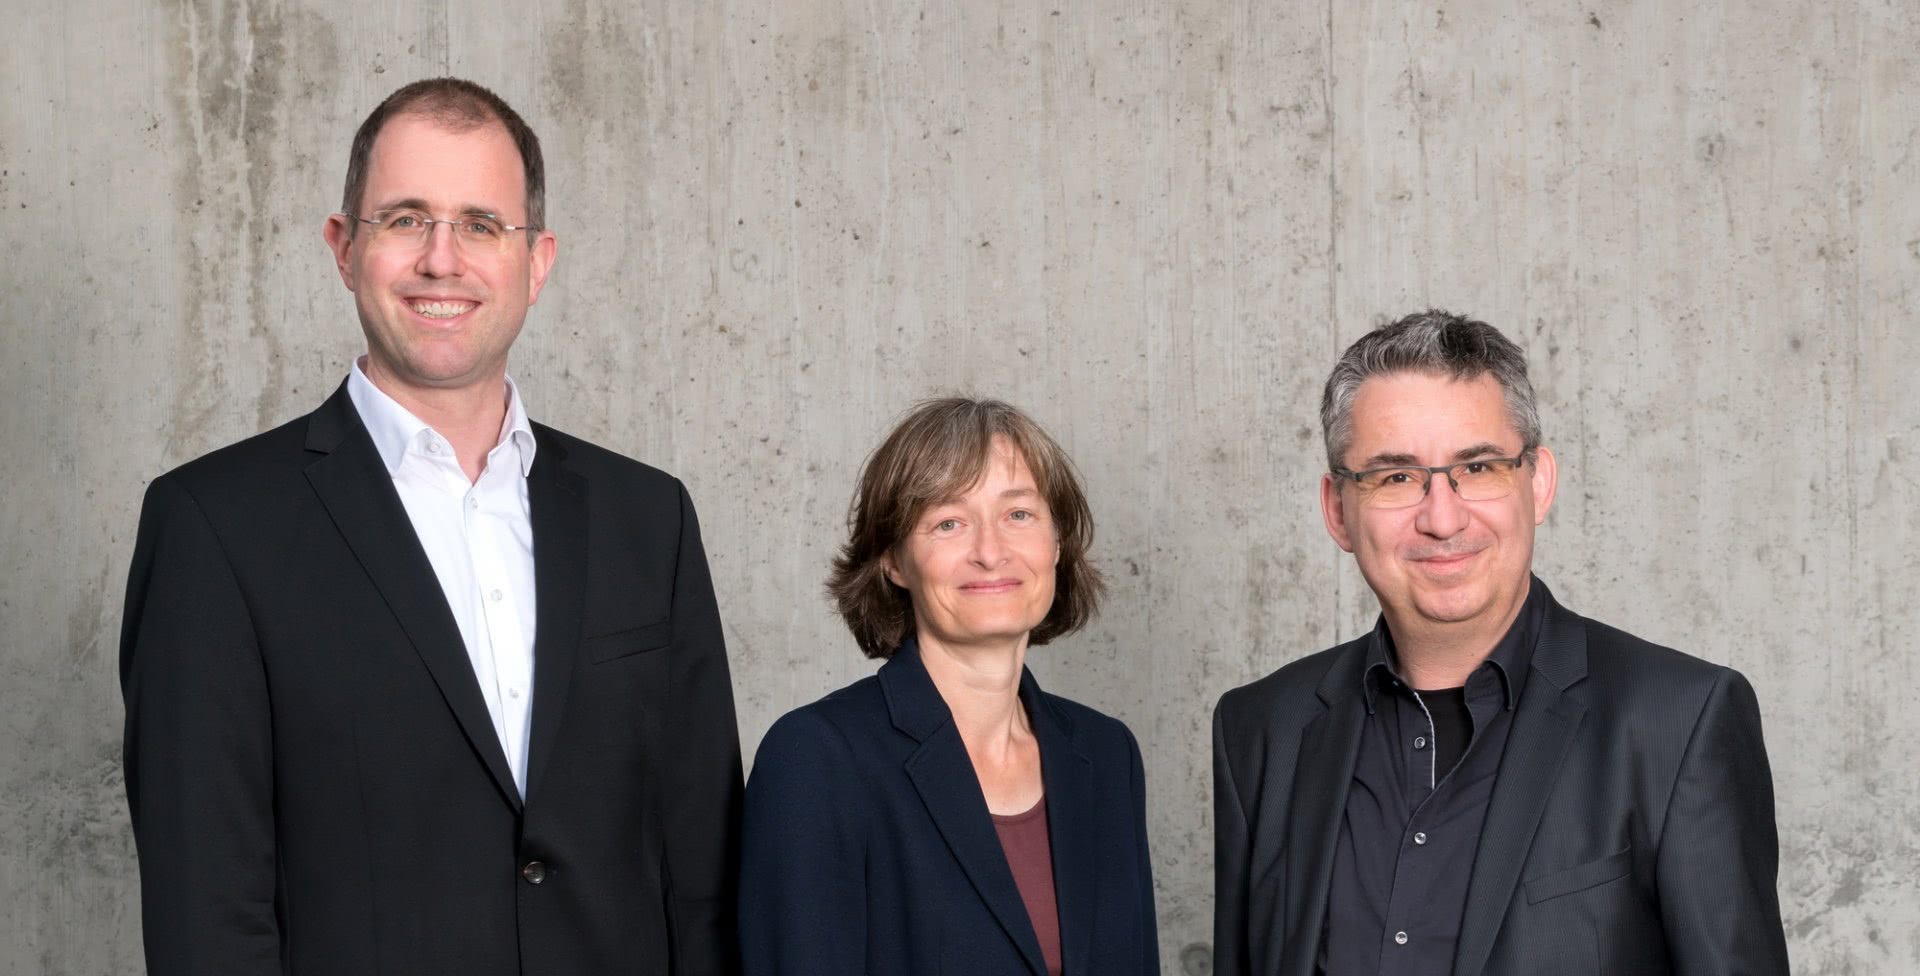 Foto: Datenschutzpartner-Team (Martin Steiger, Cornelia Diethelm, Andreas Von Gunten)